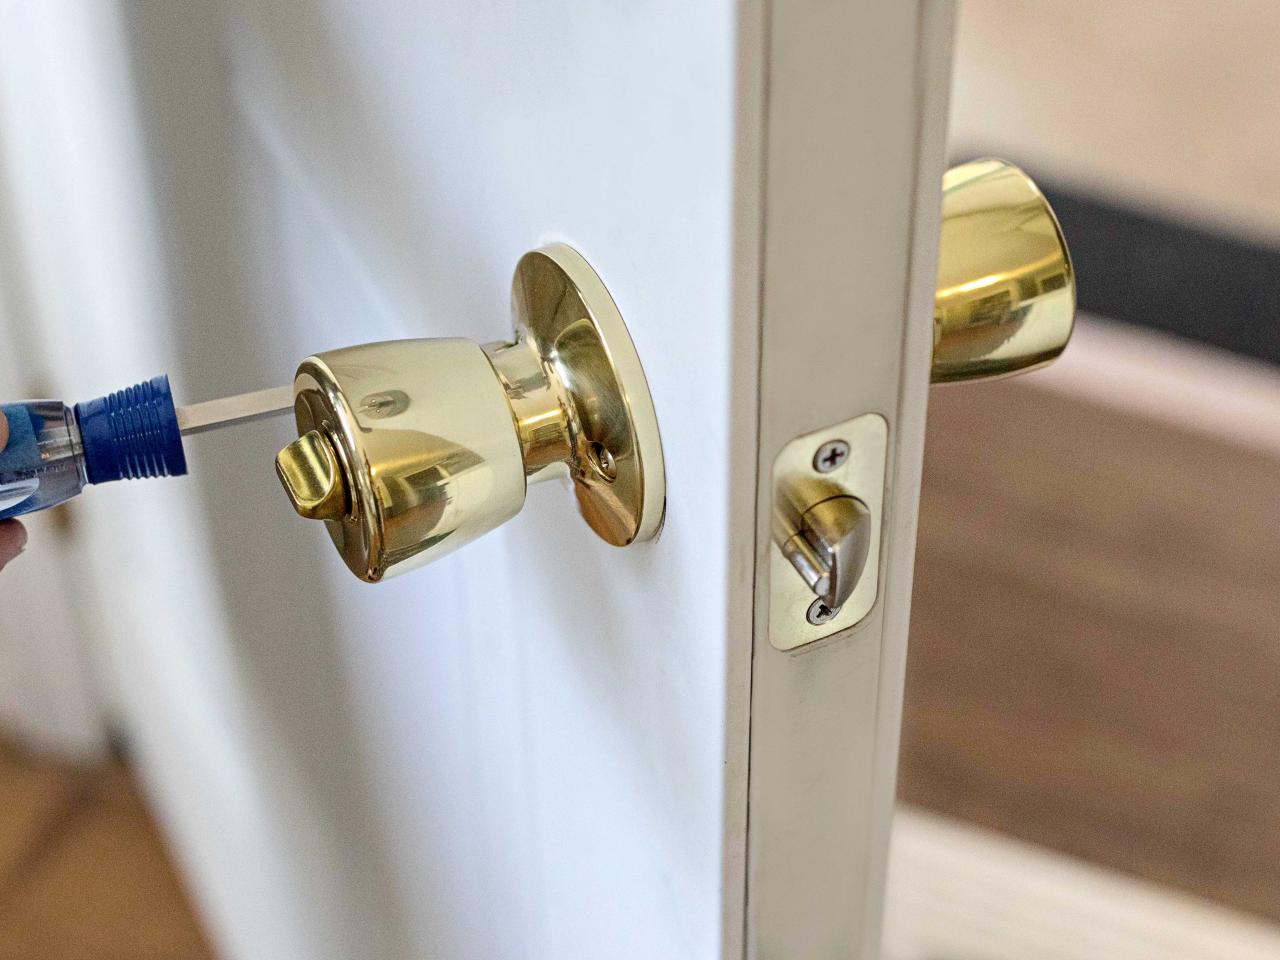 How To Remove A Door Knob - How To Remove Bathroom Door Lock